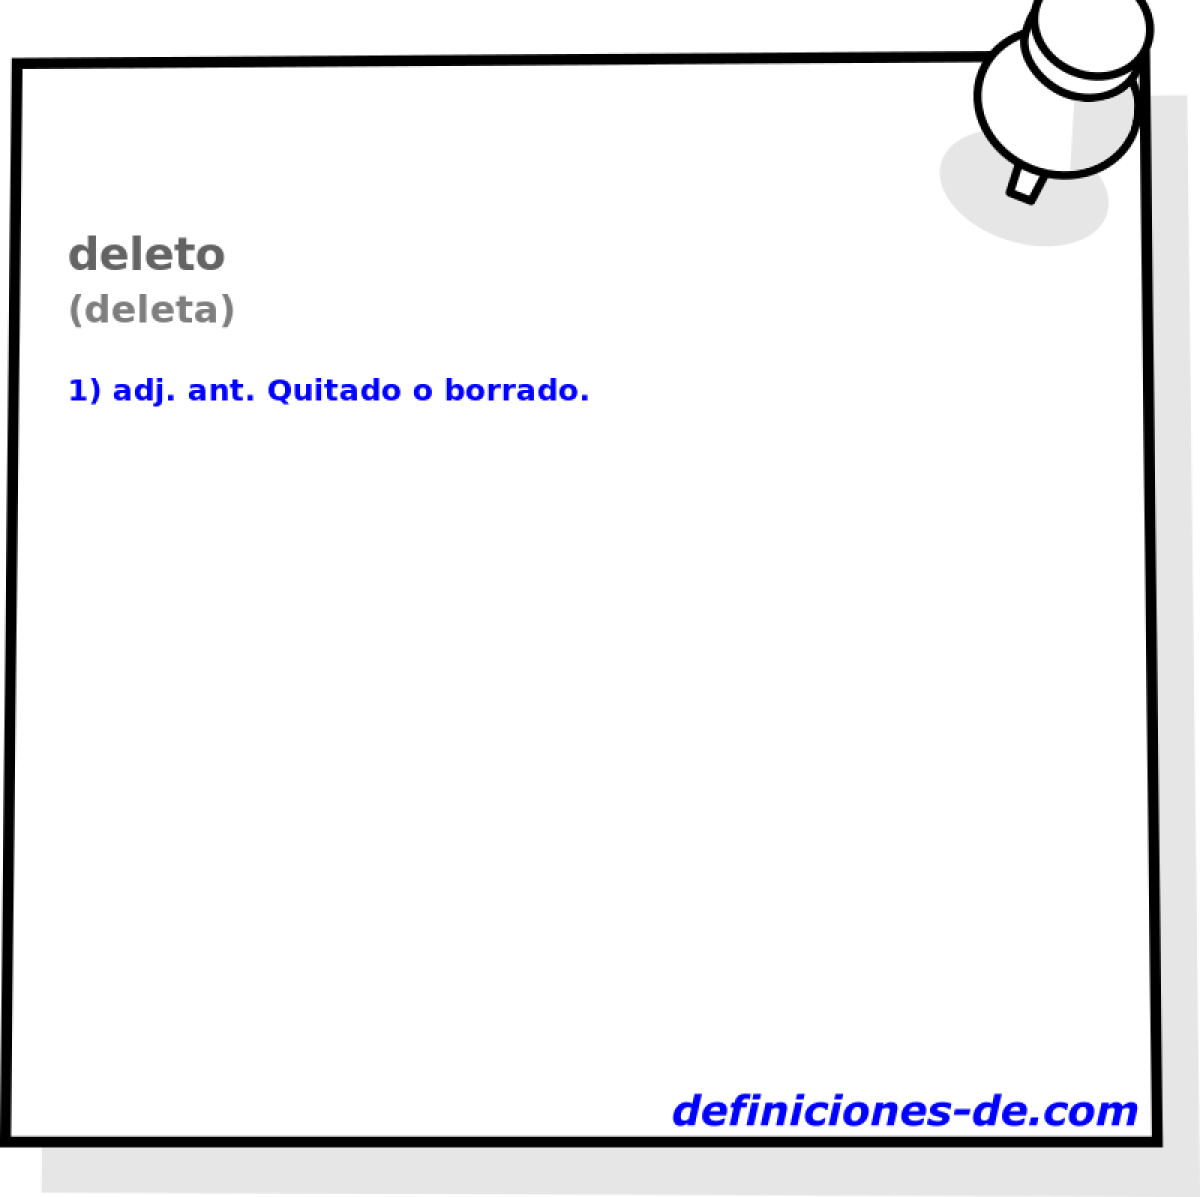 deleto (deleta)